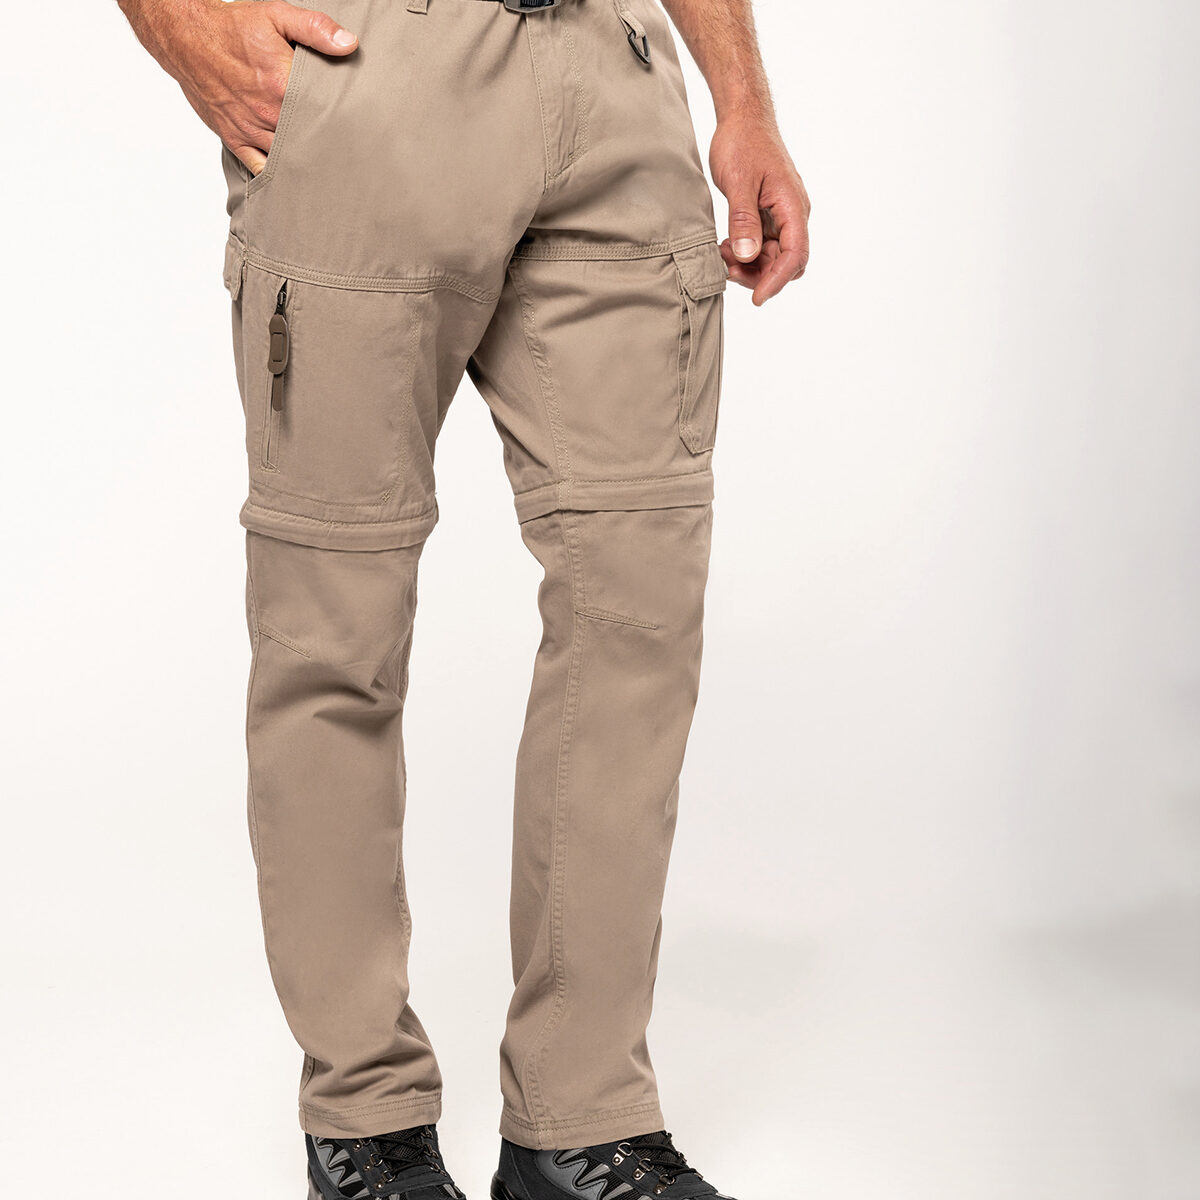 2-in-1 multi-pocket trousers